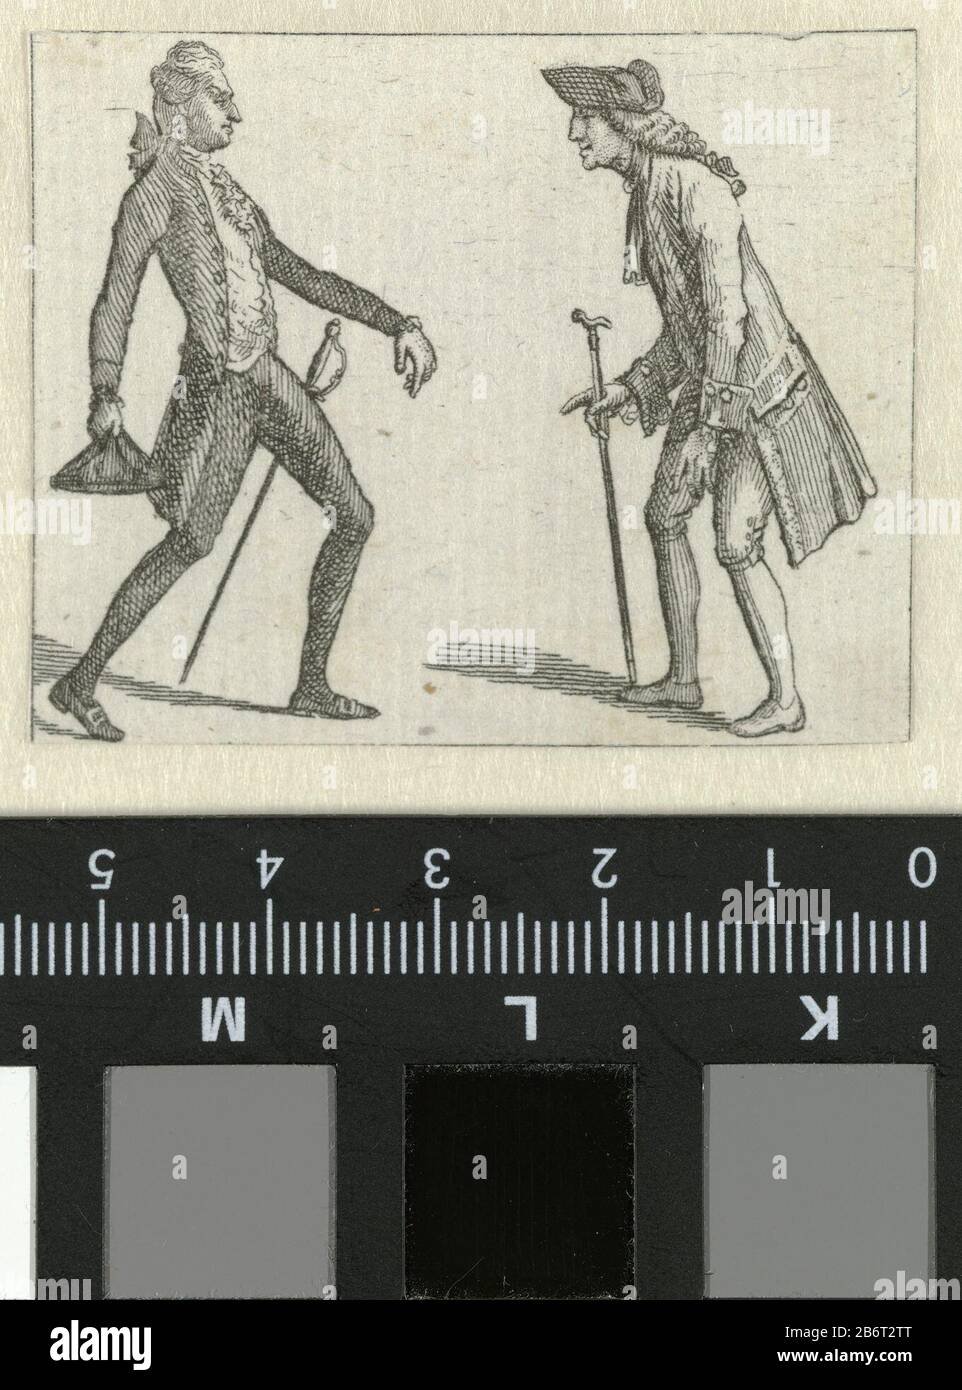 Habillemens de Leipzig 1785-1786 twee staande mannen Links een man gekleed in een frak, vest en kniebroek. Gerimpelde jabot en manchetten. Kousen. Accessoires: (sier)degen, driekantige steek, schoenen met gespen. De man rechts draagt een justaucorps, jabot, kniebroek, kousen. Accessoires: hoed, wandelstok, schoenen. De prent maakt deel uit van een almanak, Habillemens de Leipzig, 1785-1786. Manufacturer : prentmaker: Ernst Ludwig Riepenhausen Dating: 1785 - 1786 Physical kenmerken: ets Material: papier Techniek: etsen Dimensions: blad: h 42 mm × b 53 mm Subject: trousers, breeches, etc. (BREEC Stock Photo